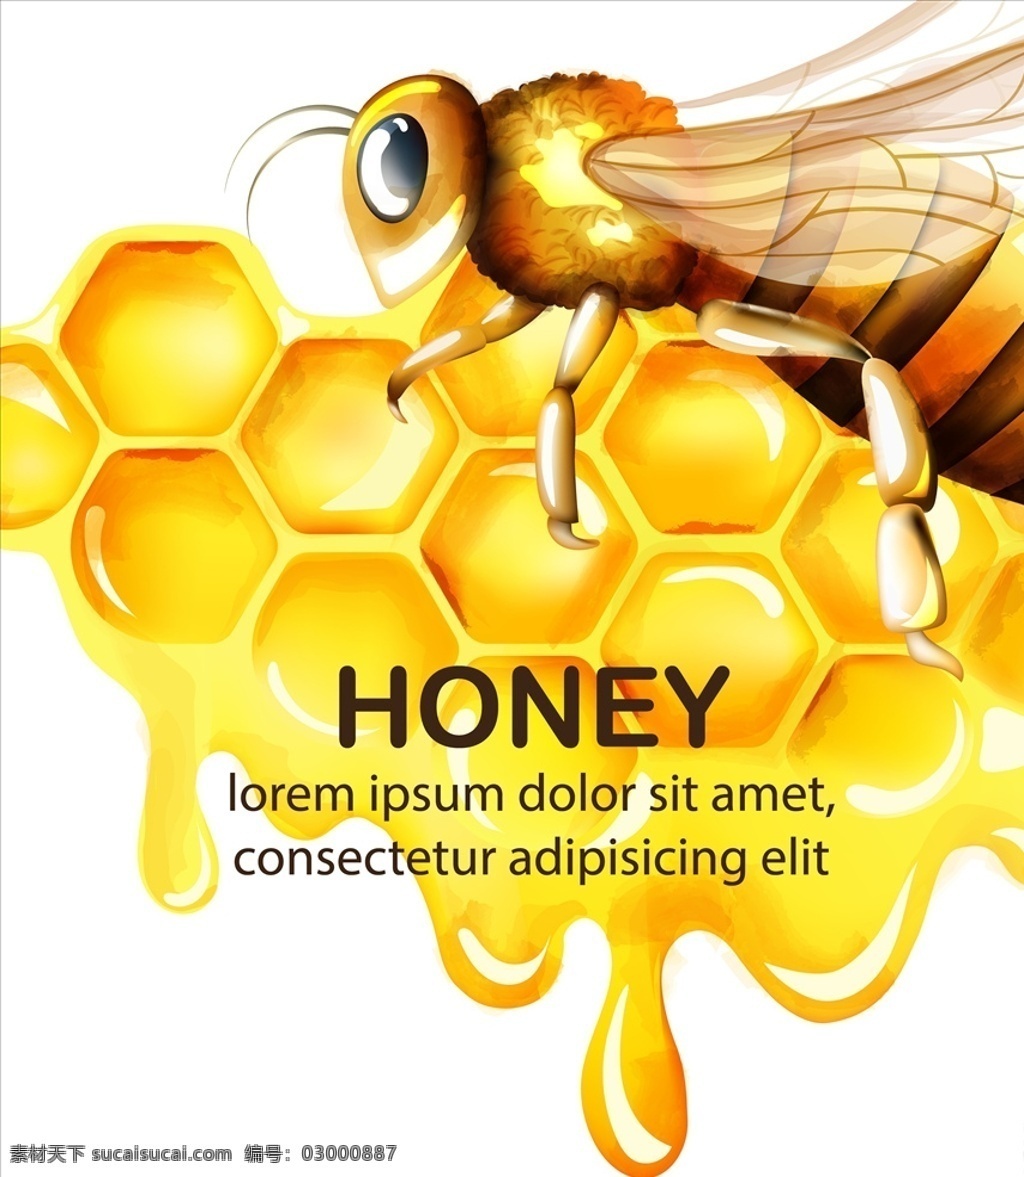 小蜜蜂 蜜蜂蜂蜜素材 蜜蜂素材 蜜蜂 蜂蜜素材 蜂蜜 蜜糖 蜂巢 蜂窝 底纹边框 其他素材